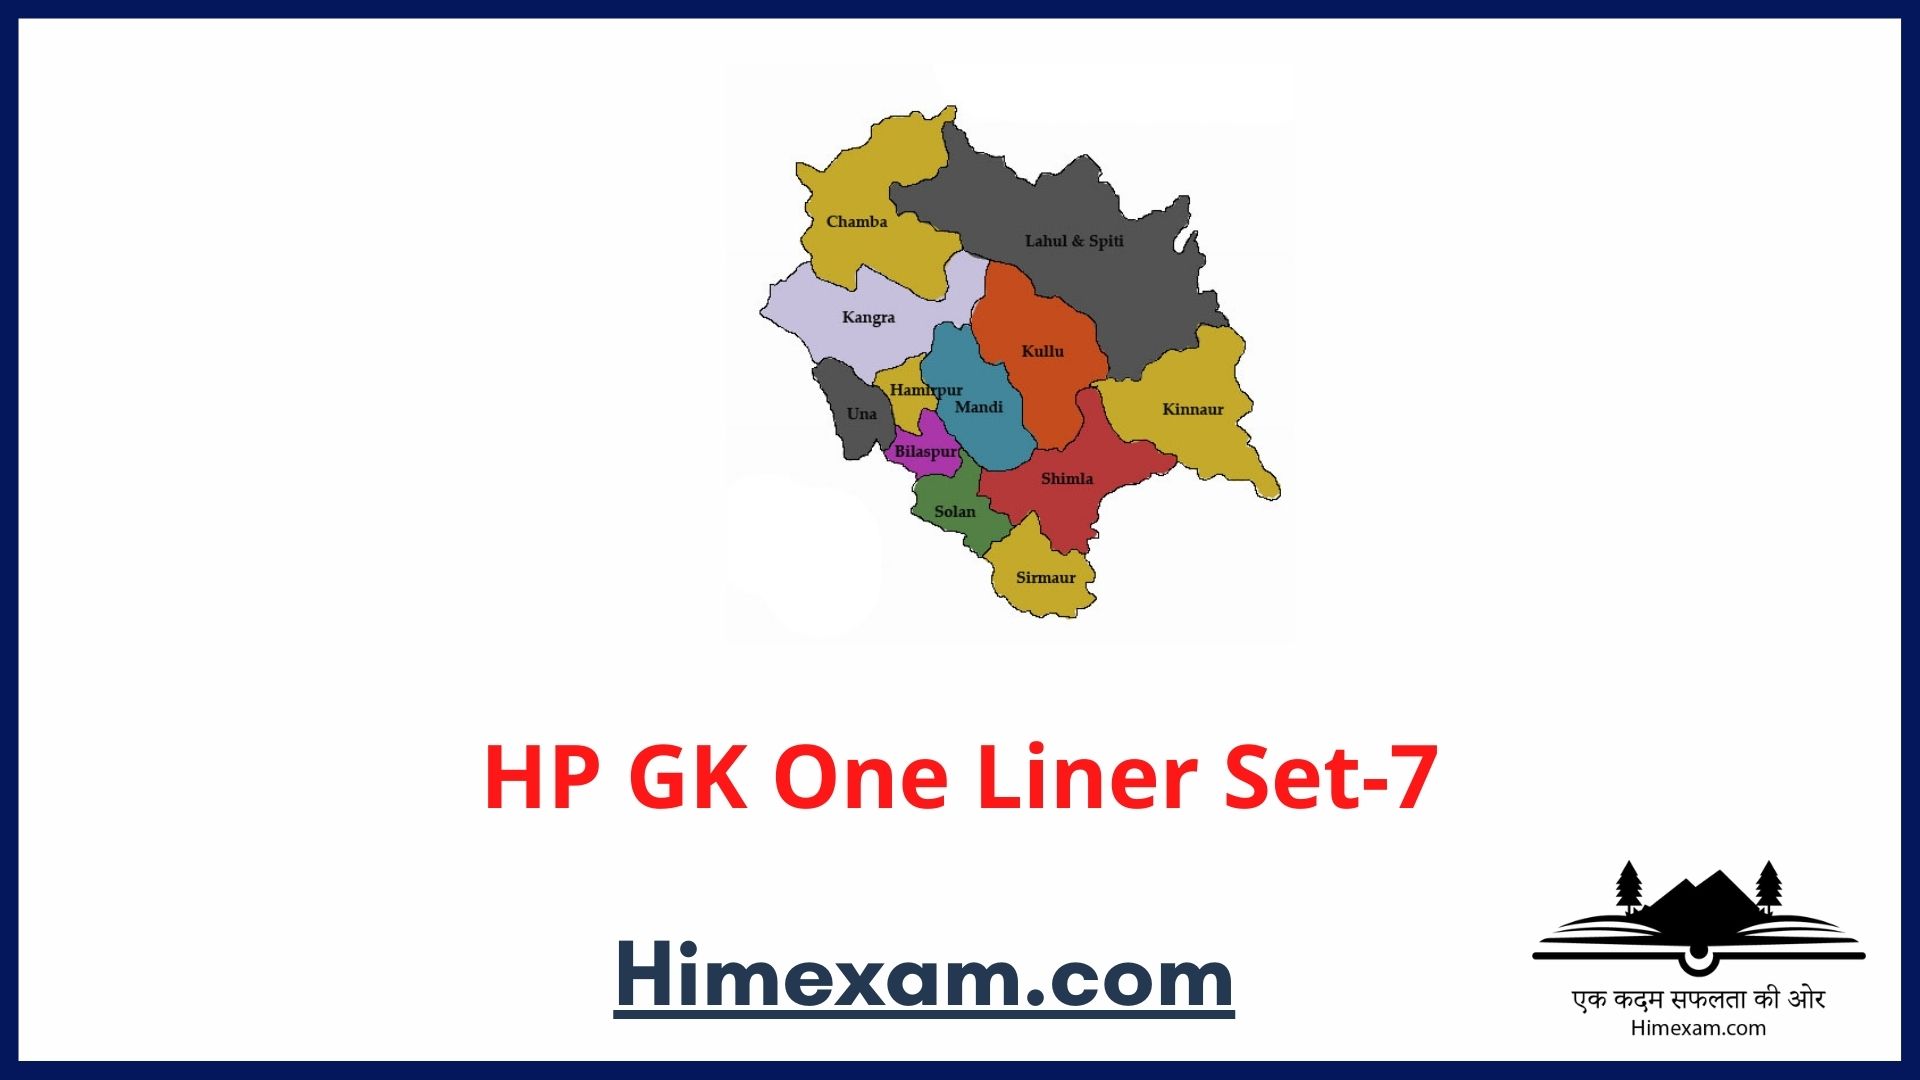 HP GK One Liner Set-7